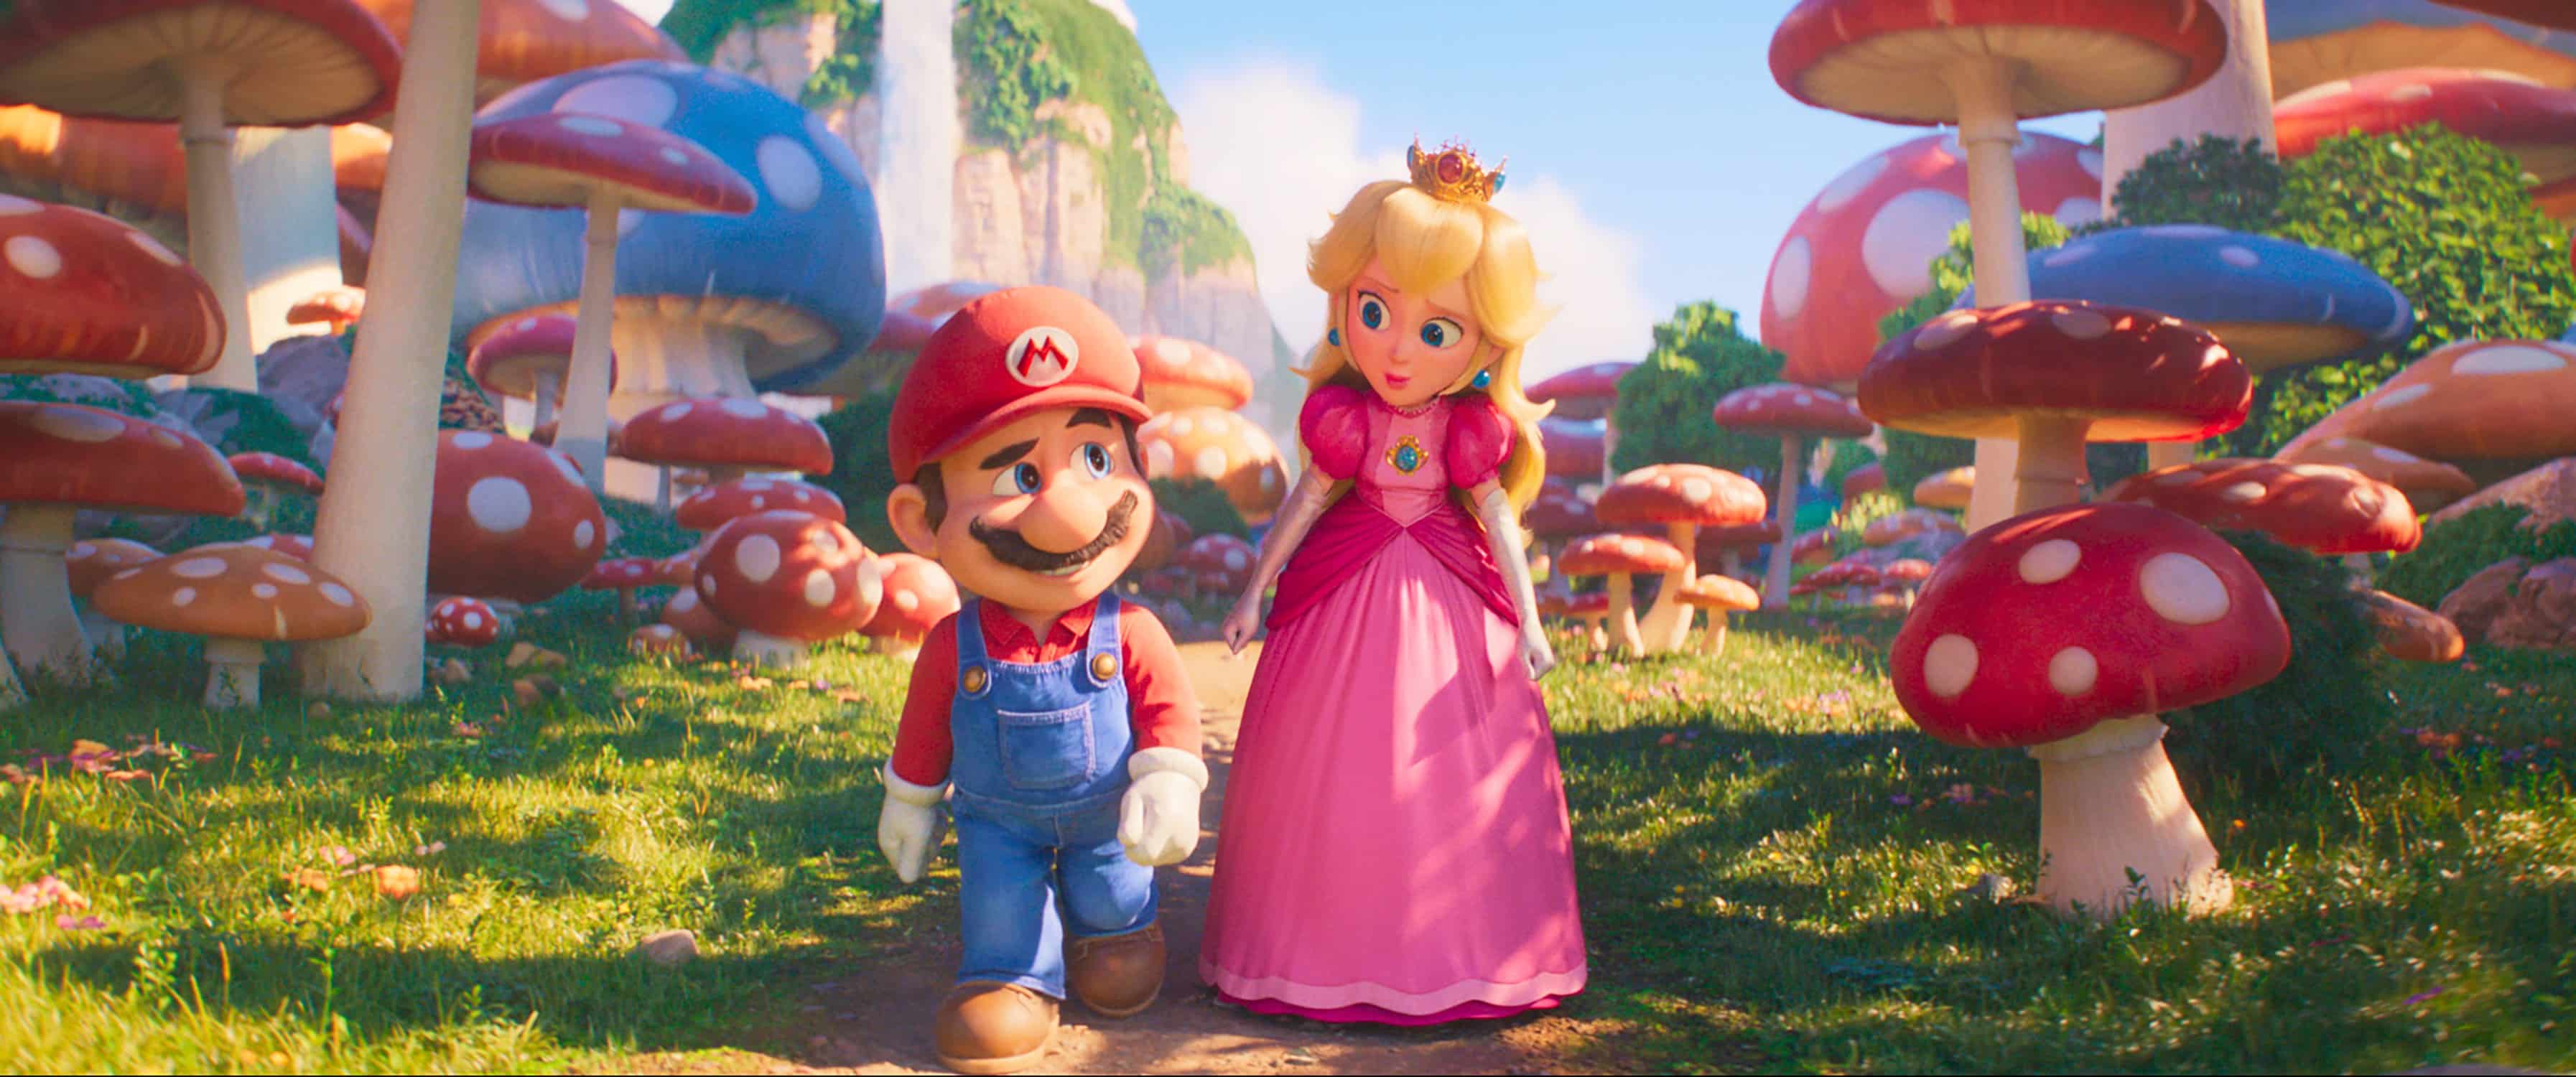 New Super Mario Bros. Movie releases in April 2026 ScreenHub